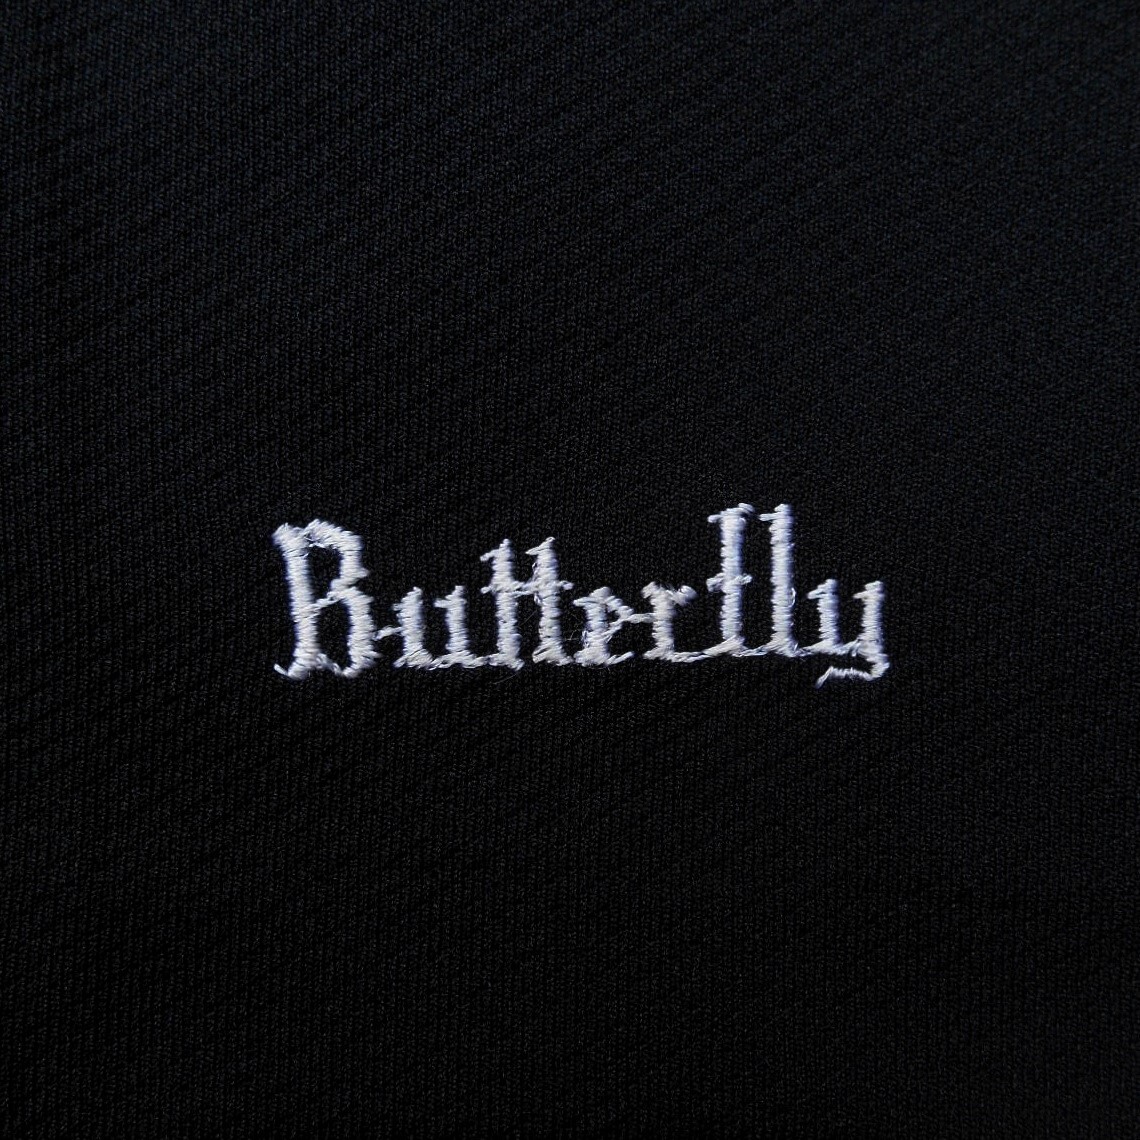 未使用 ~'80s Butterfly バタフライ S ショートパンツ 黒白 ブラック エステルジャージ トロンプルイユ切替デザイン 日本製 デッドストックの画像7